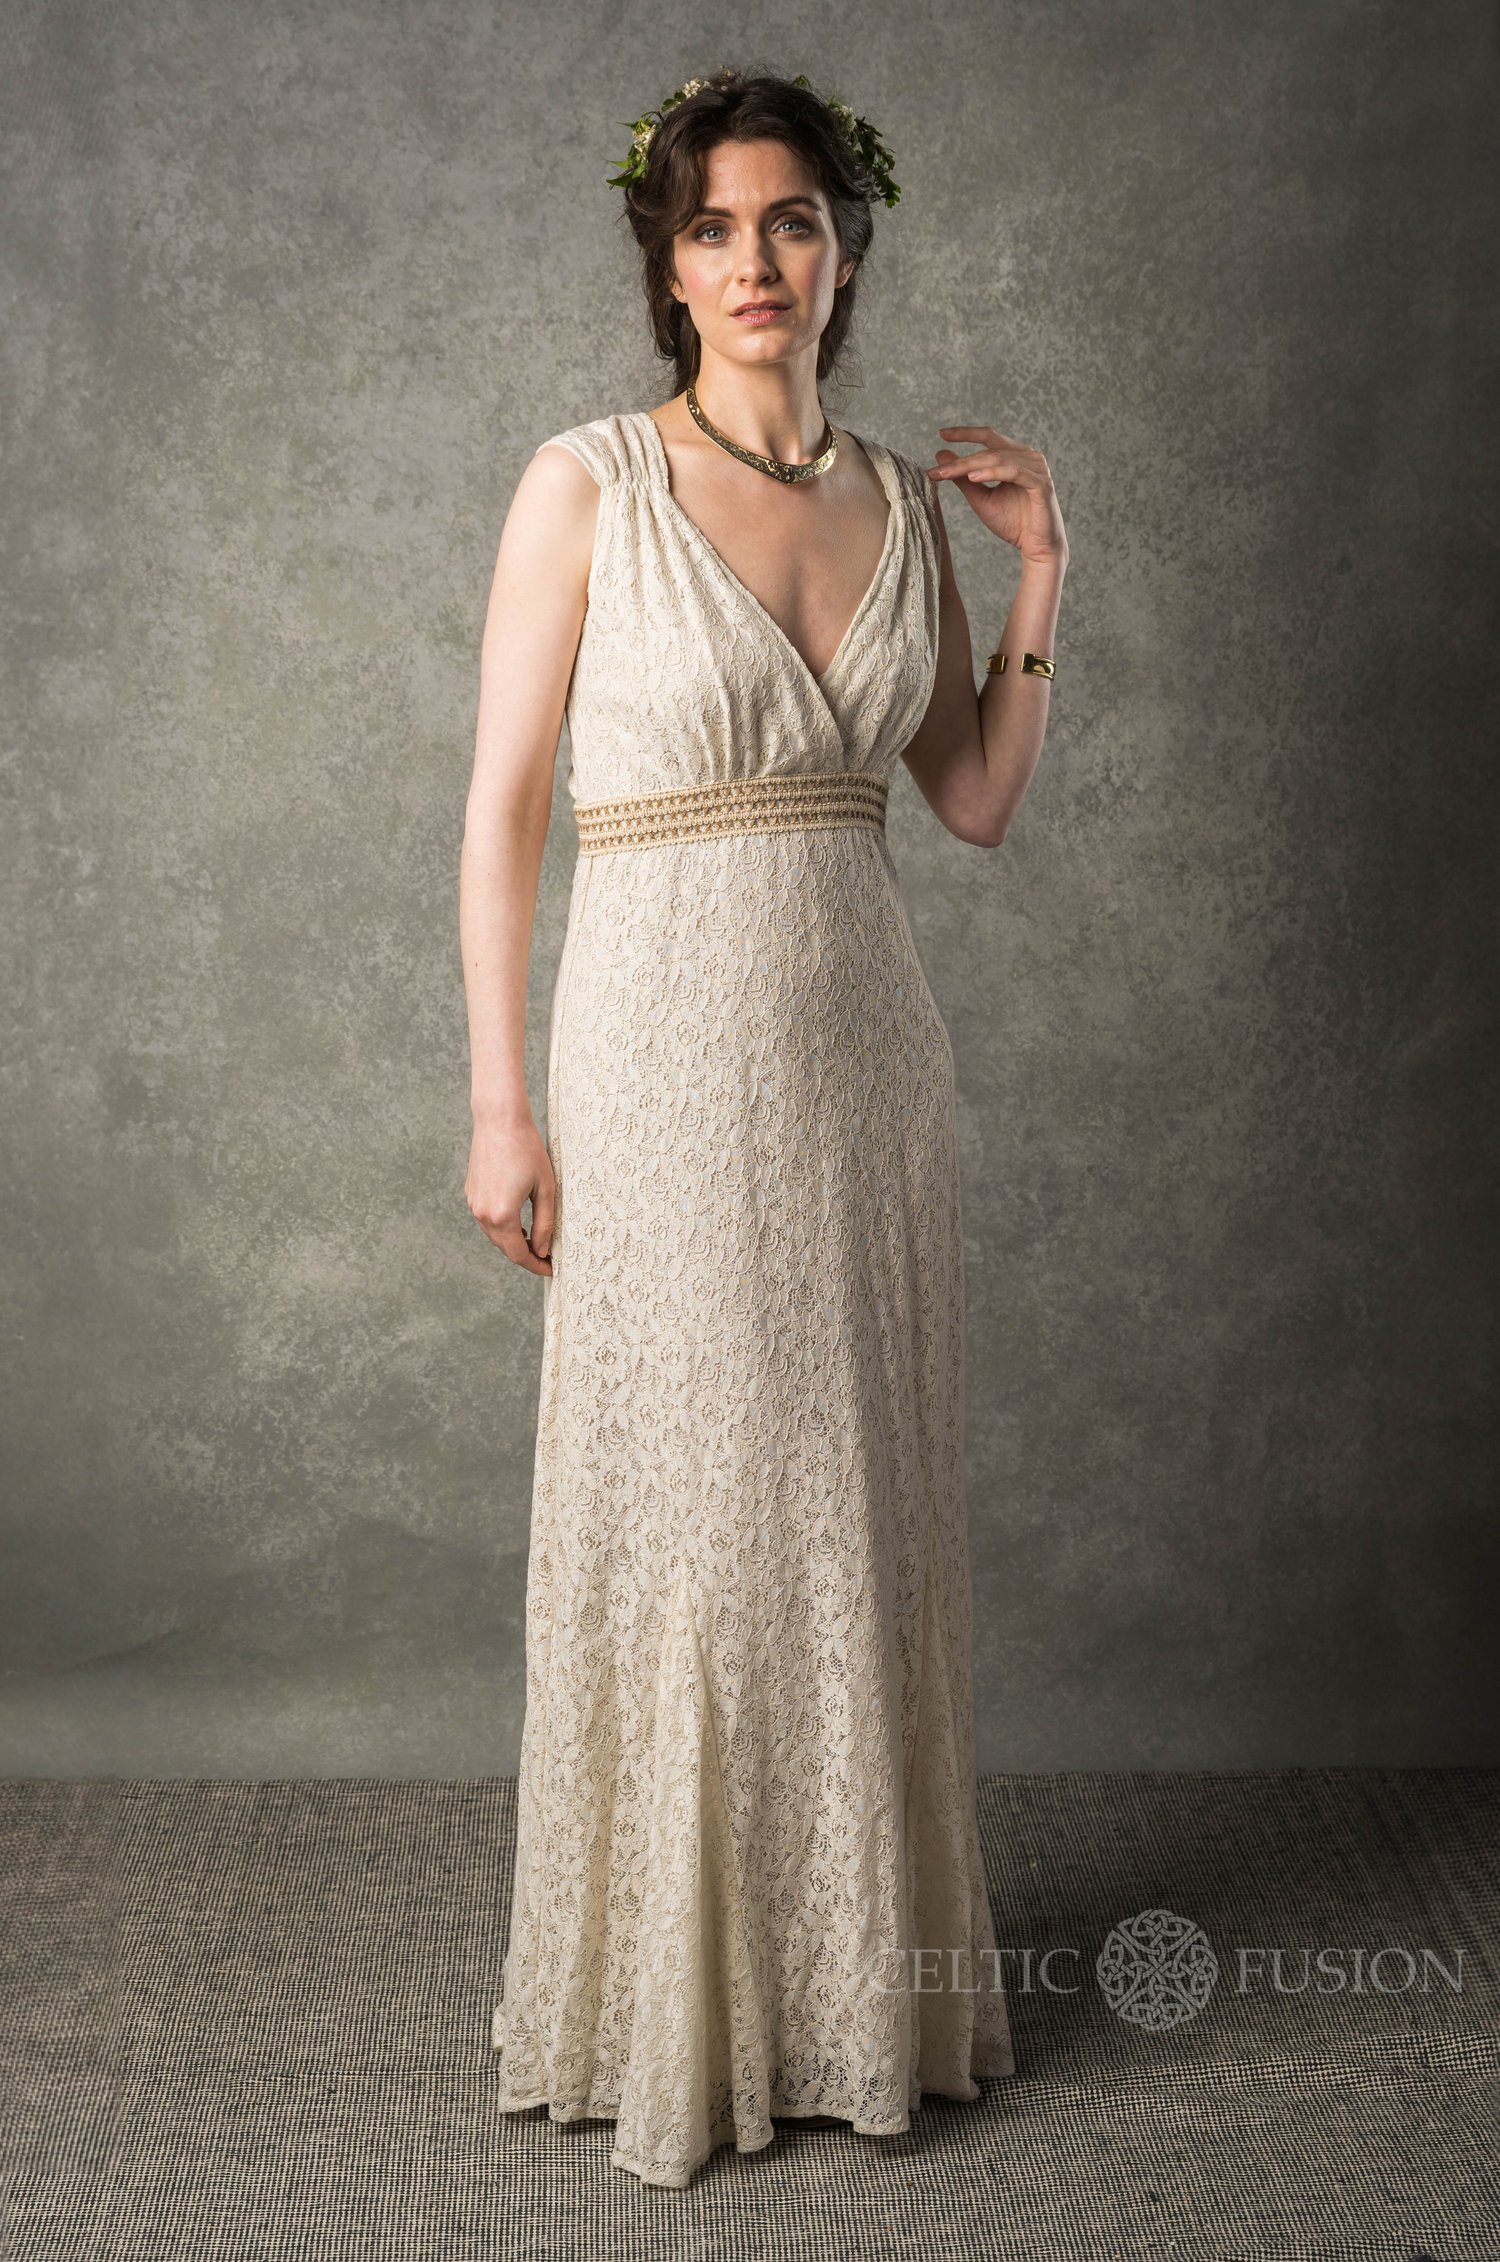 Tilskyndelse I forhold Fremtrædende Rustic Bridal dress. Ethical Dresses — Celtic Fusion ~ Folklore Clothing